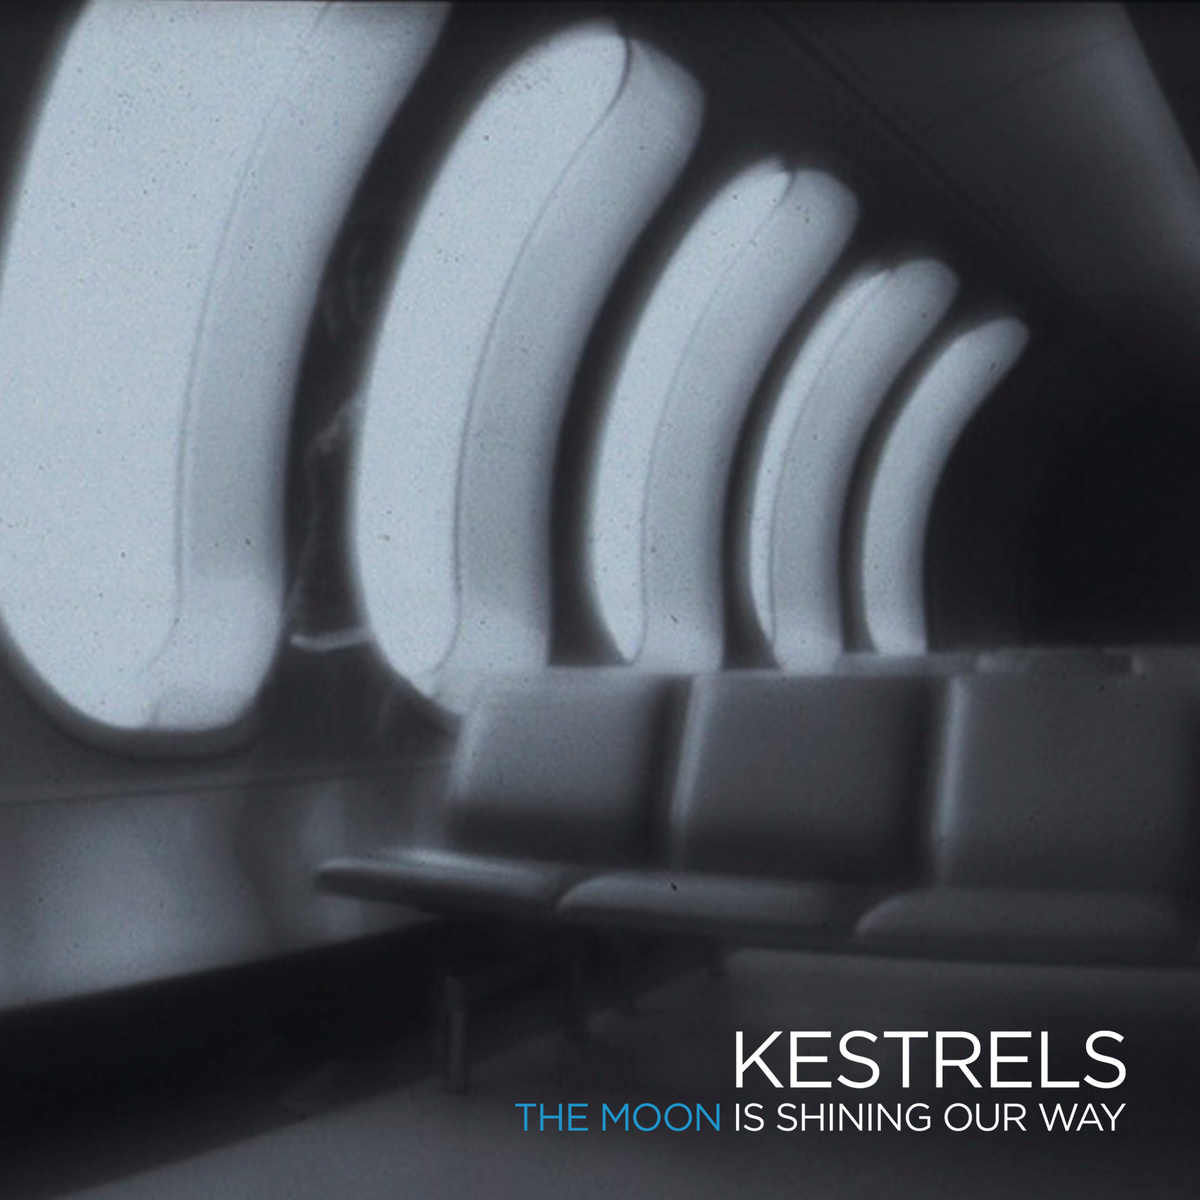 Listen: Kestrels